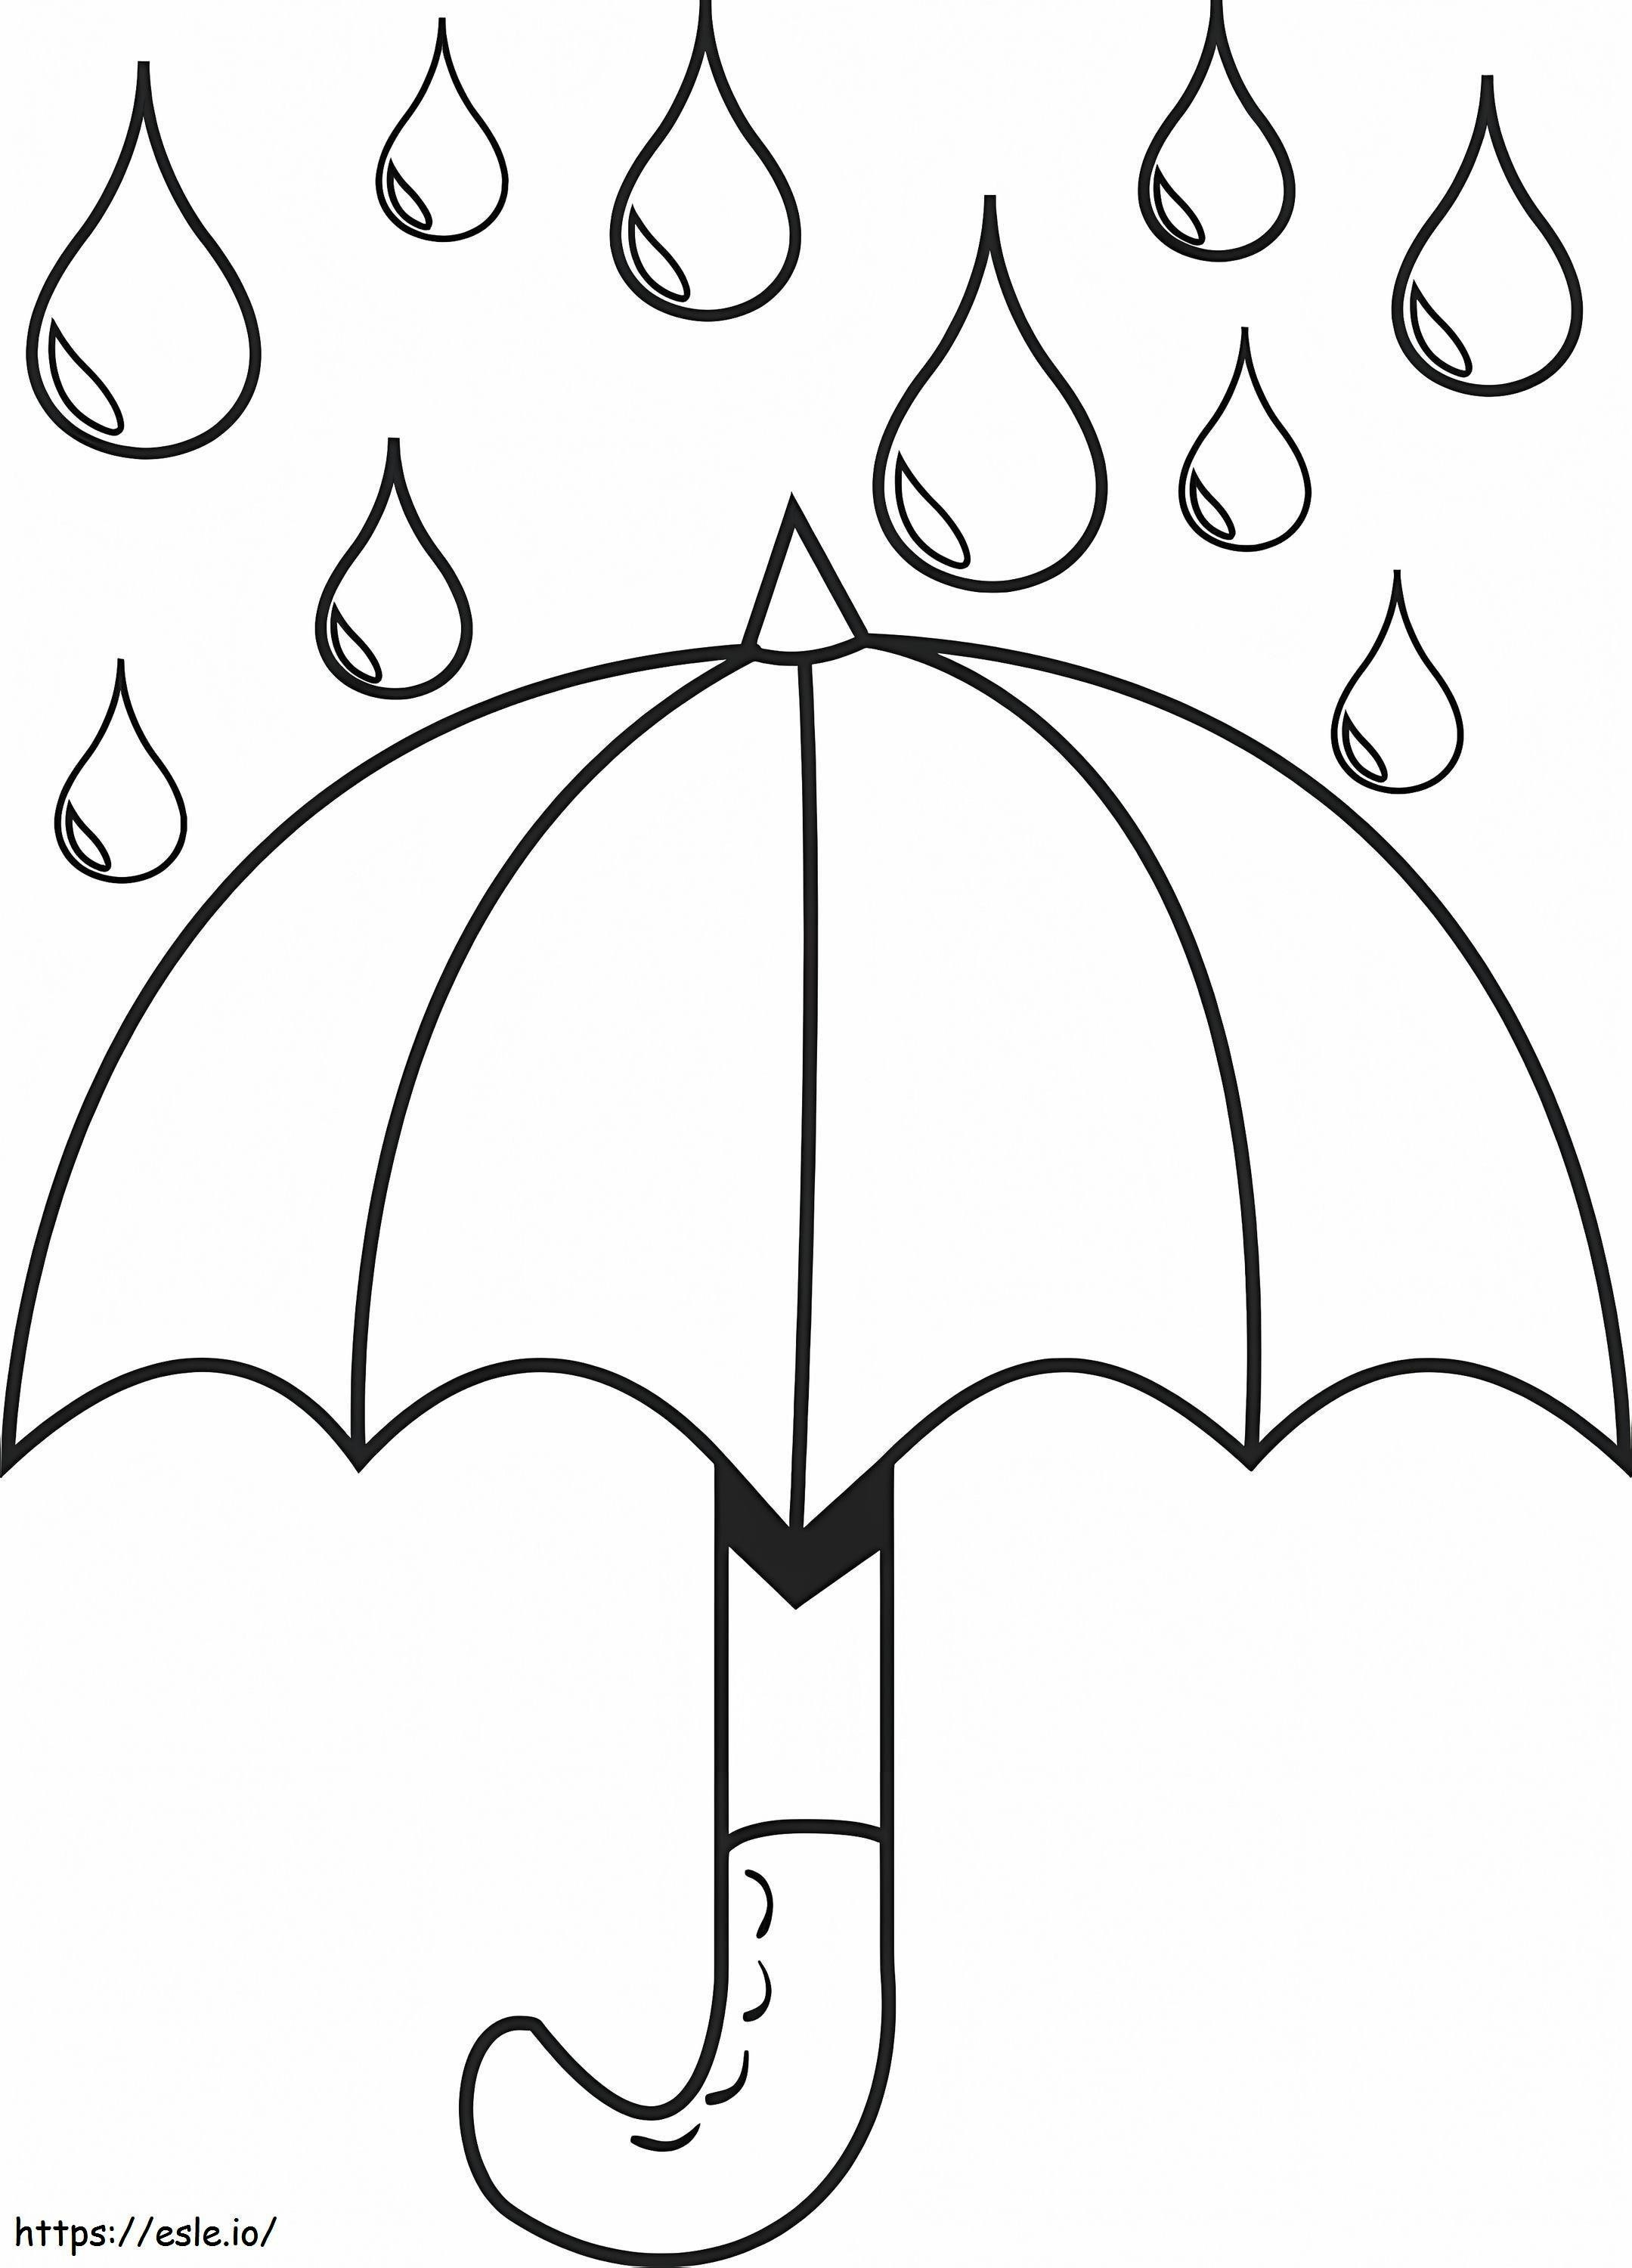 Regenschirm mit Regentropfen ausmalbilder